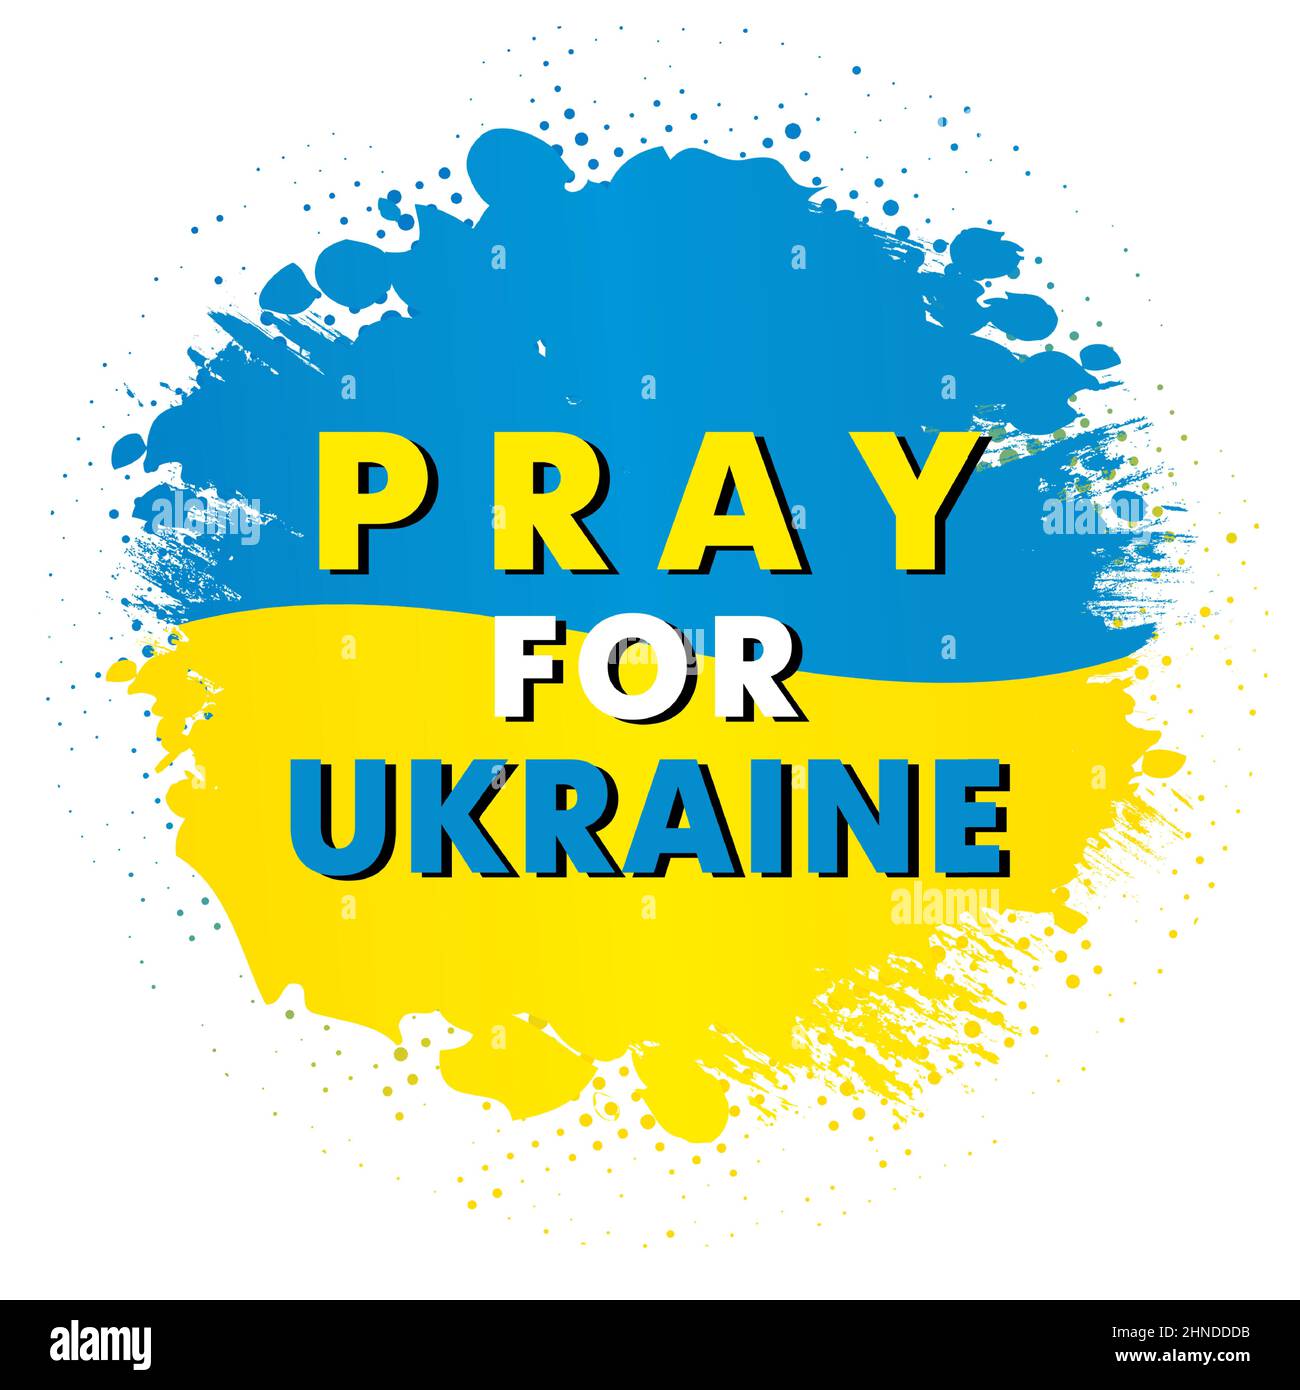 Betet für die Ukraine, stürft und stürft die Grunge-Flagge. Internationaler Protest - Stoppt die russische Aggression gegen die Ukraine. Vektorgrafik Stock Vektor